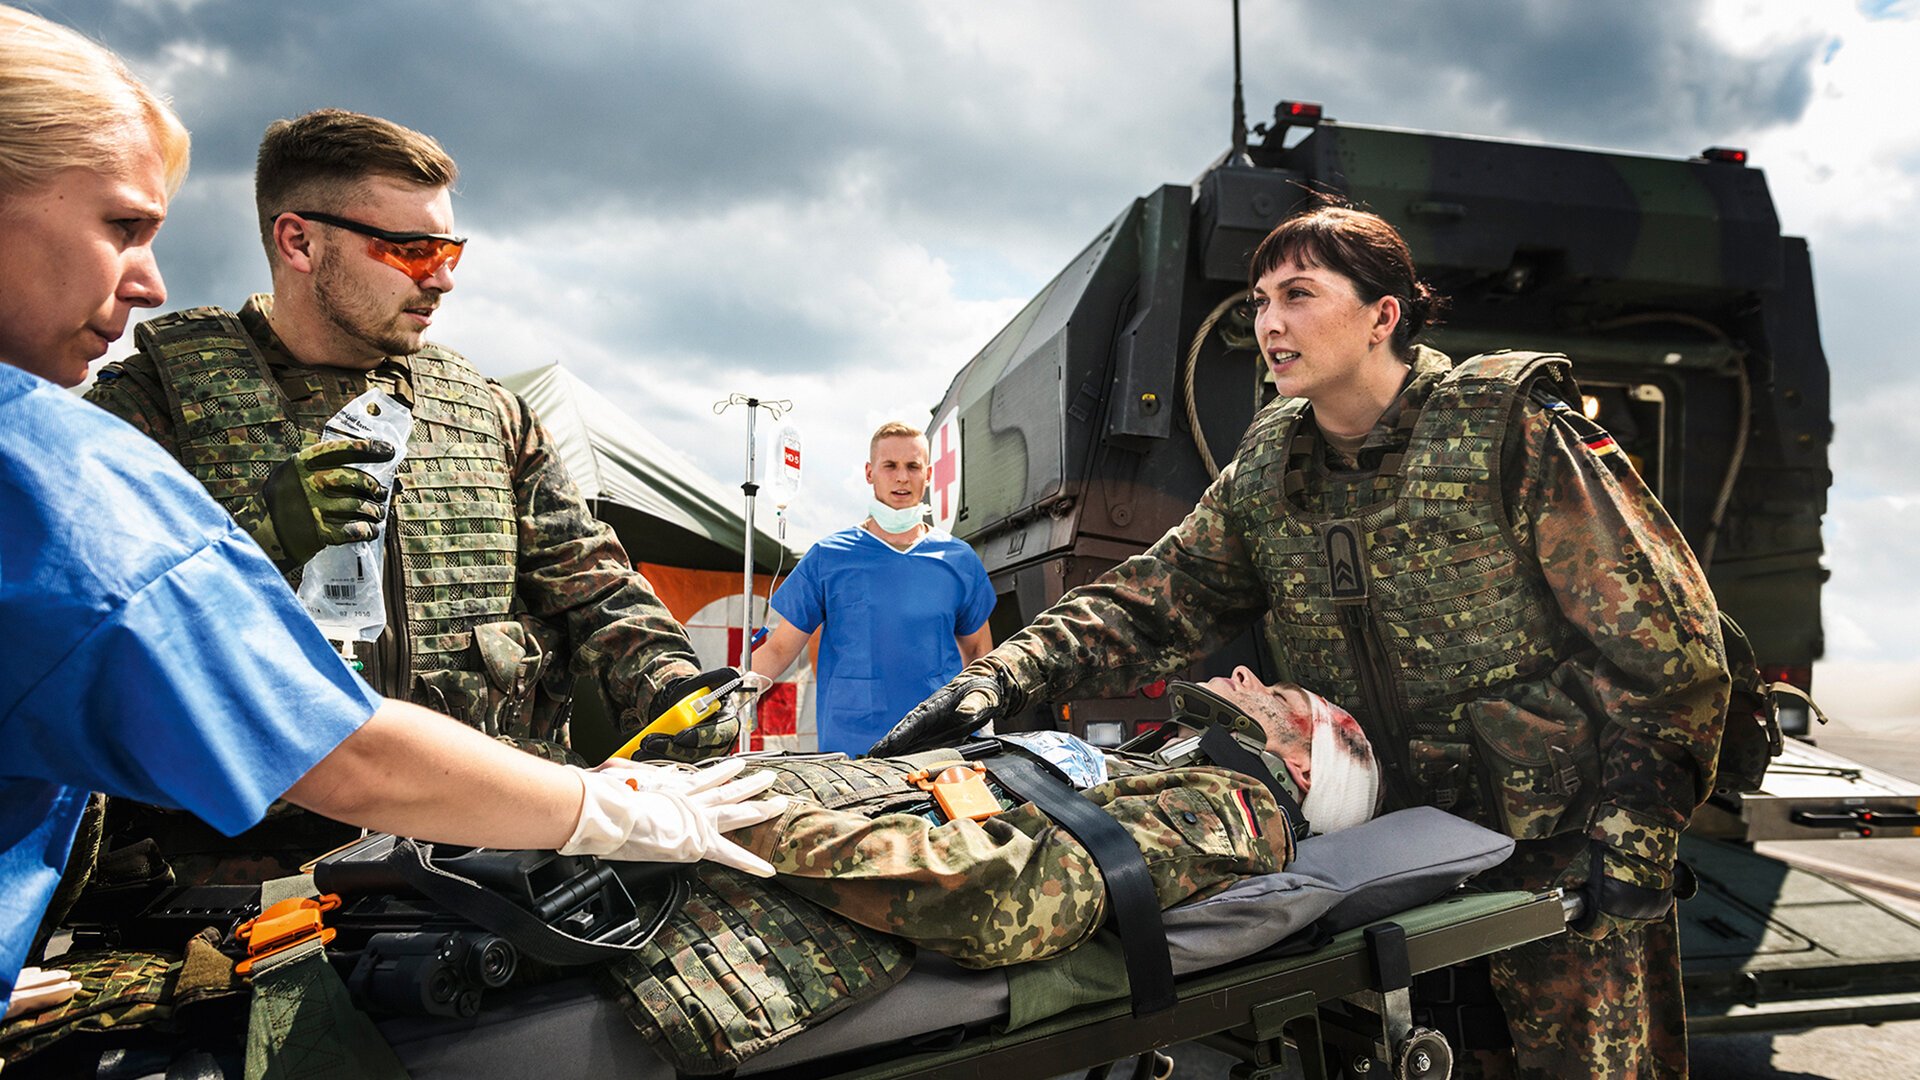 Sanitäterin und Sanitäter versorgen einen Soldaten auf einer Trage